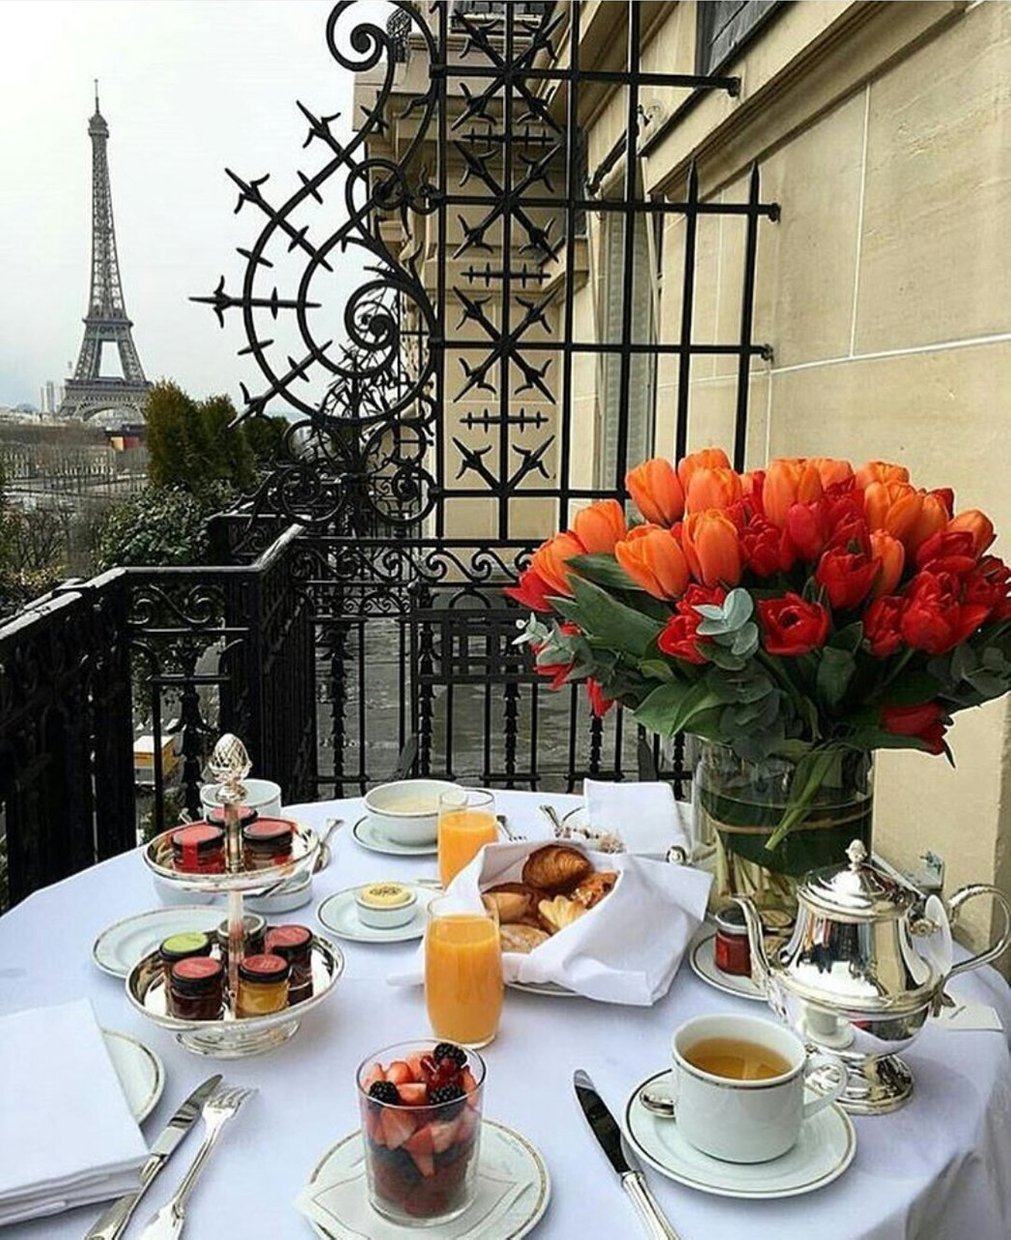 Красивый завтрак на балконе с видом на Эйфелеву башню» — карточка ...